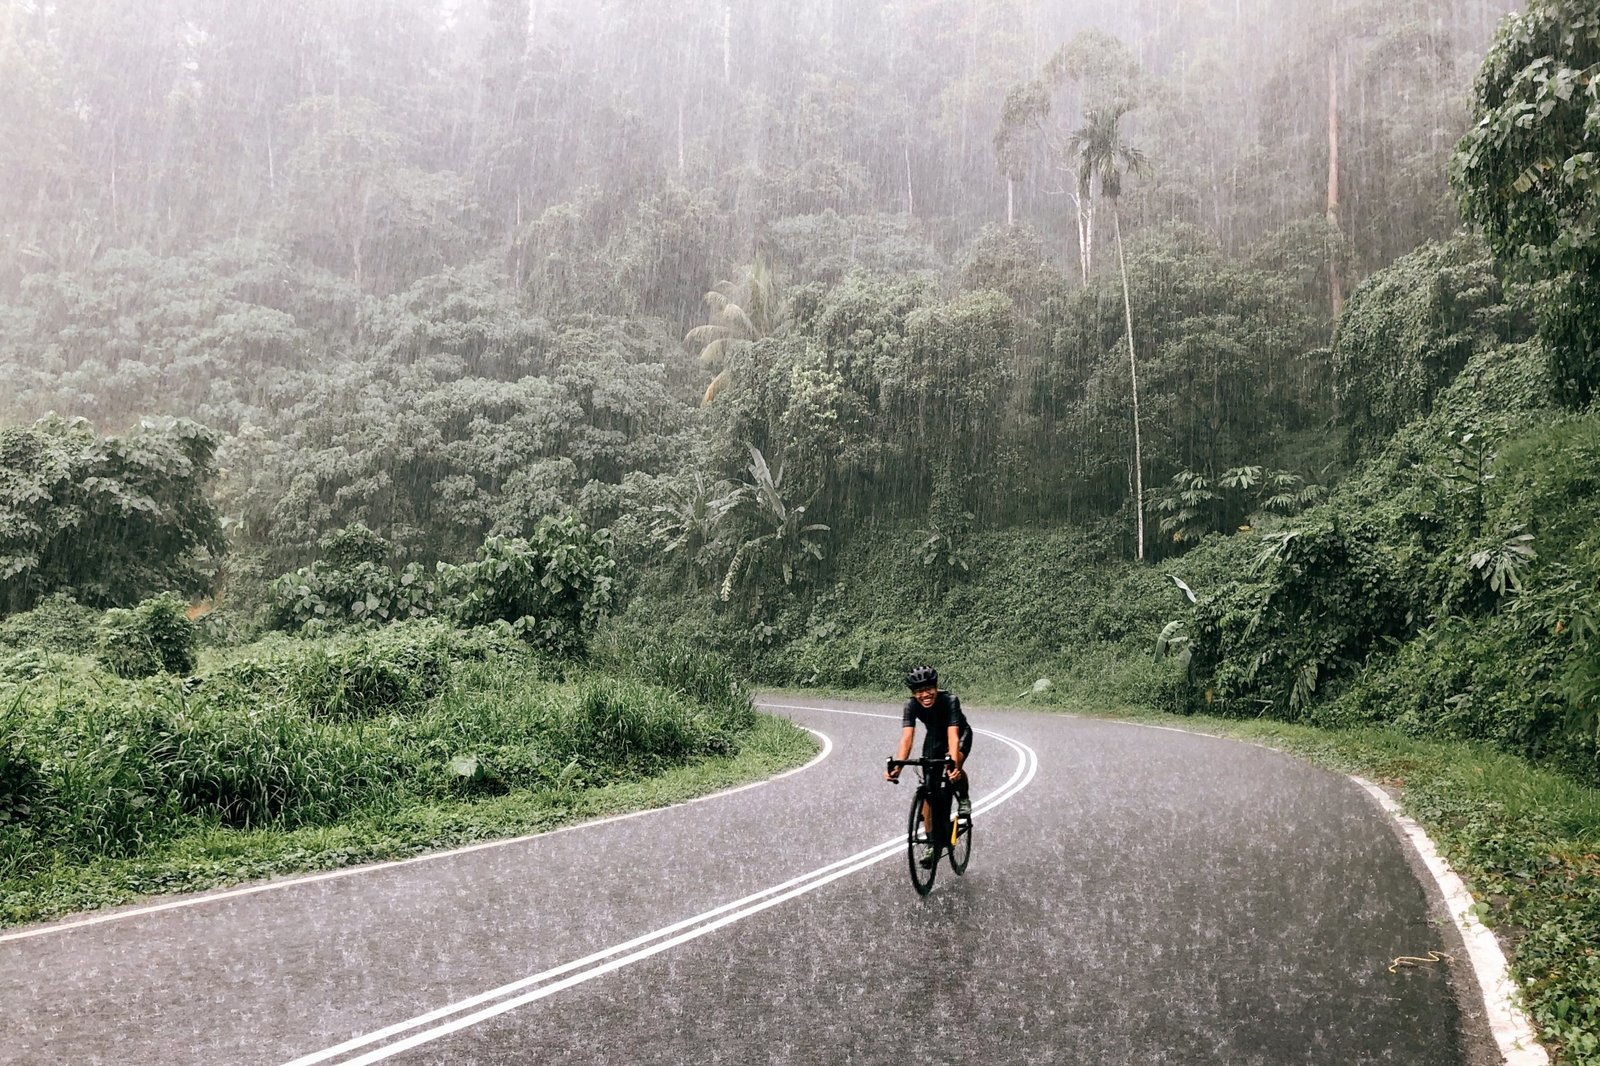 Como pedalar na chuva? Veja 6 dicas importantes